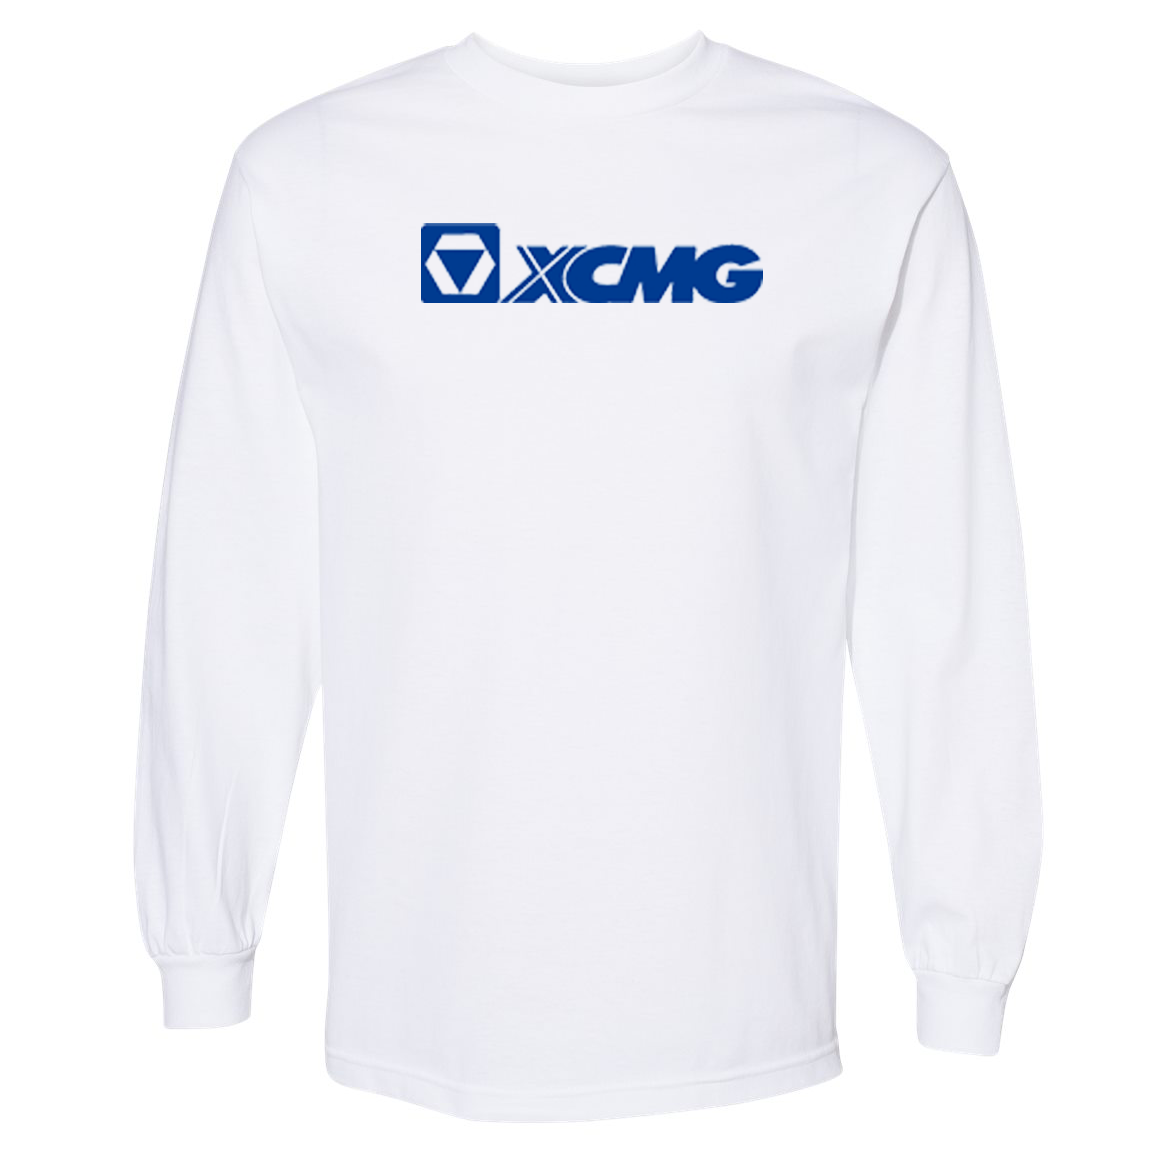 XCMG Unisex Classic Long Sleeve Tee